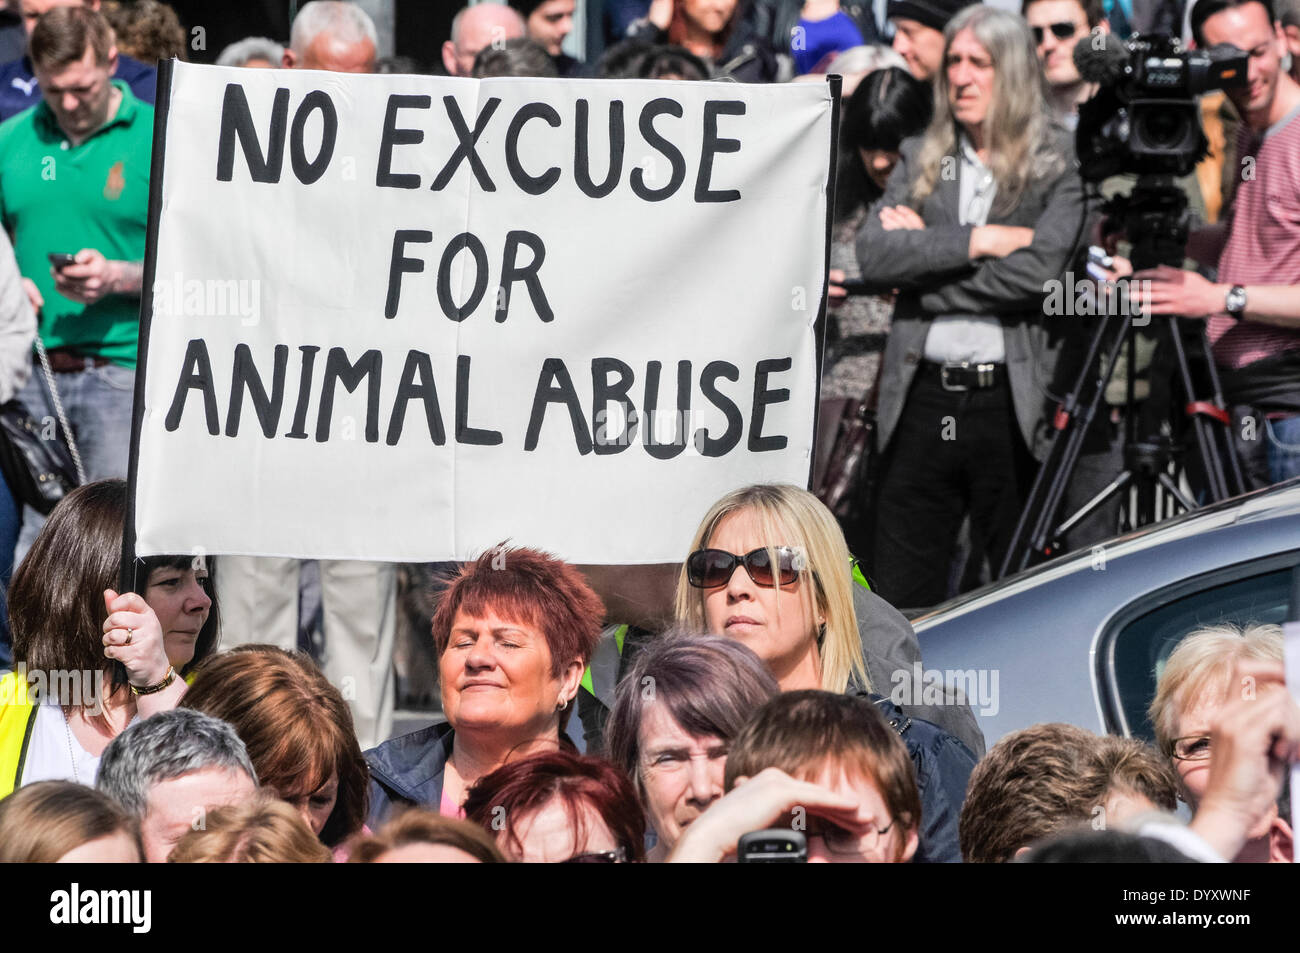 Belfast, Irlanda del Nord. 27 apr 2014 - Un banner dicendo 'nessuna scusa per abuso di animale' viene mantenuto fino a centinaia di persone si riuniscono per un rally per chiedere la fine di crudeltà nei confronti degli animali e una legislazione più severa per i tossicodipendenti. Credito: Stephen Barnes/Alamy Live News Foto Stock